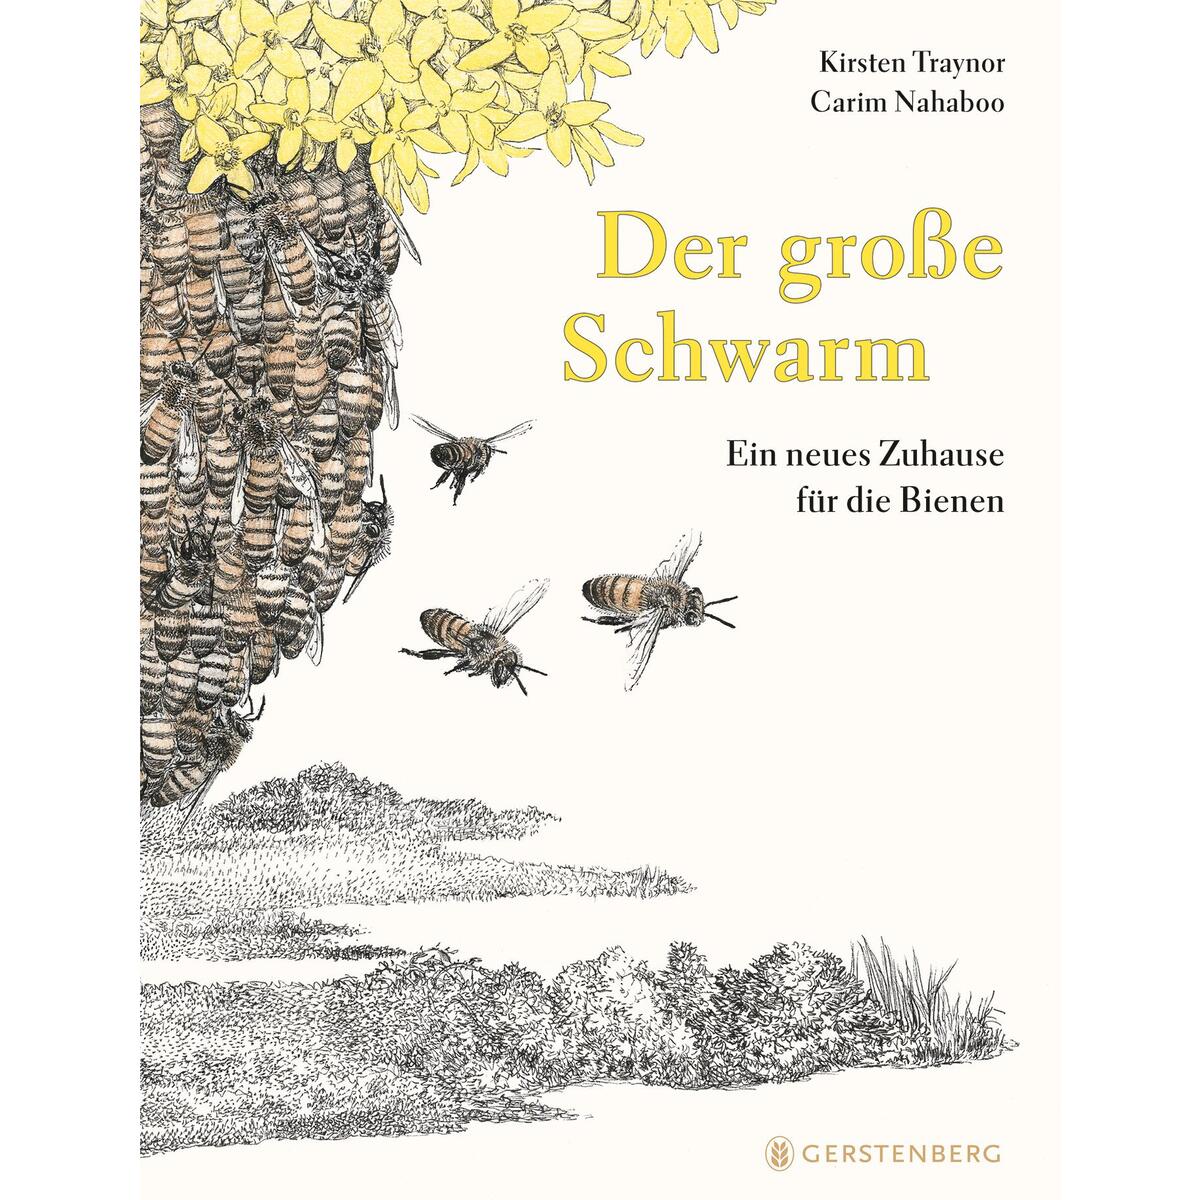 Der große Schwarm von Gerstenberg Verlag